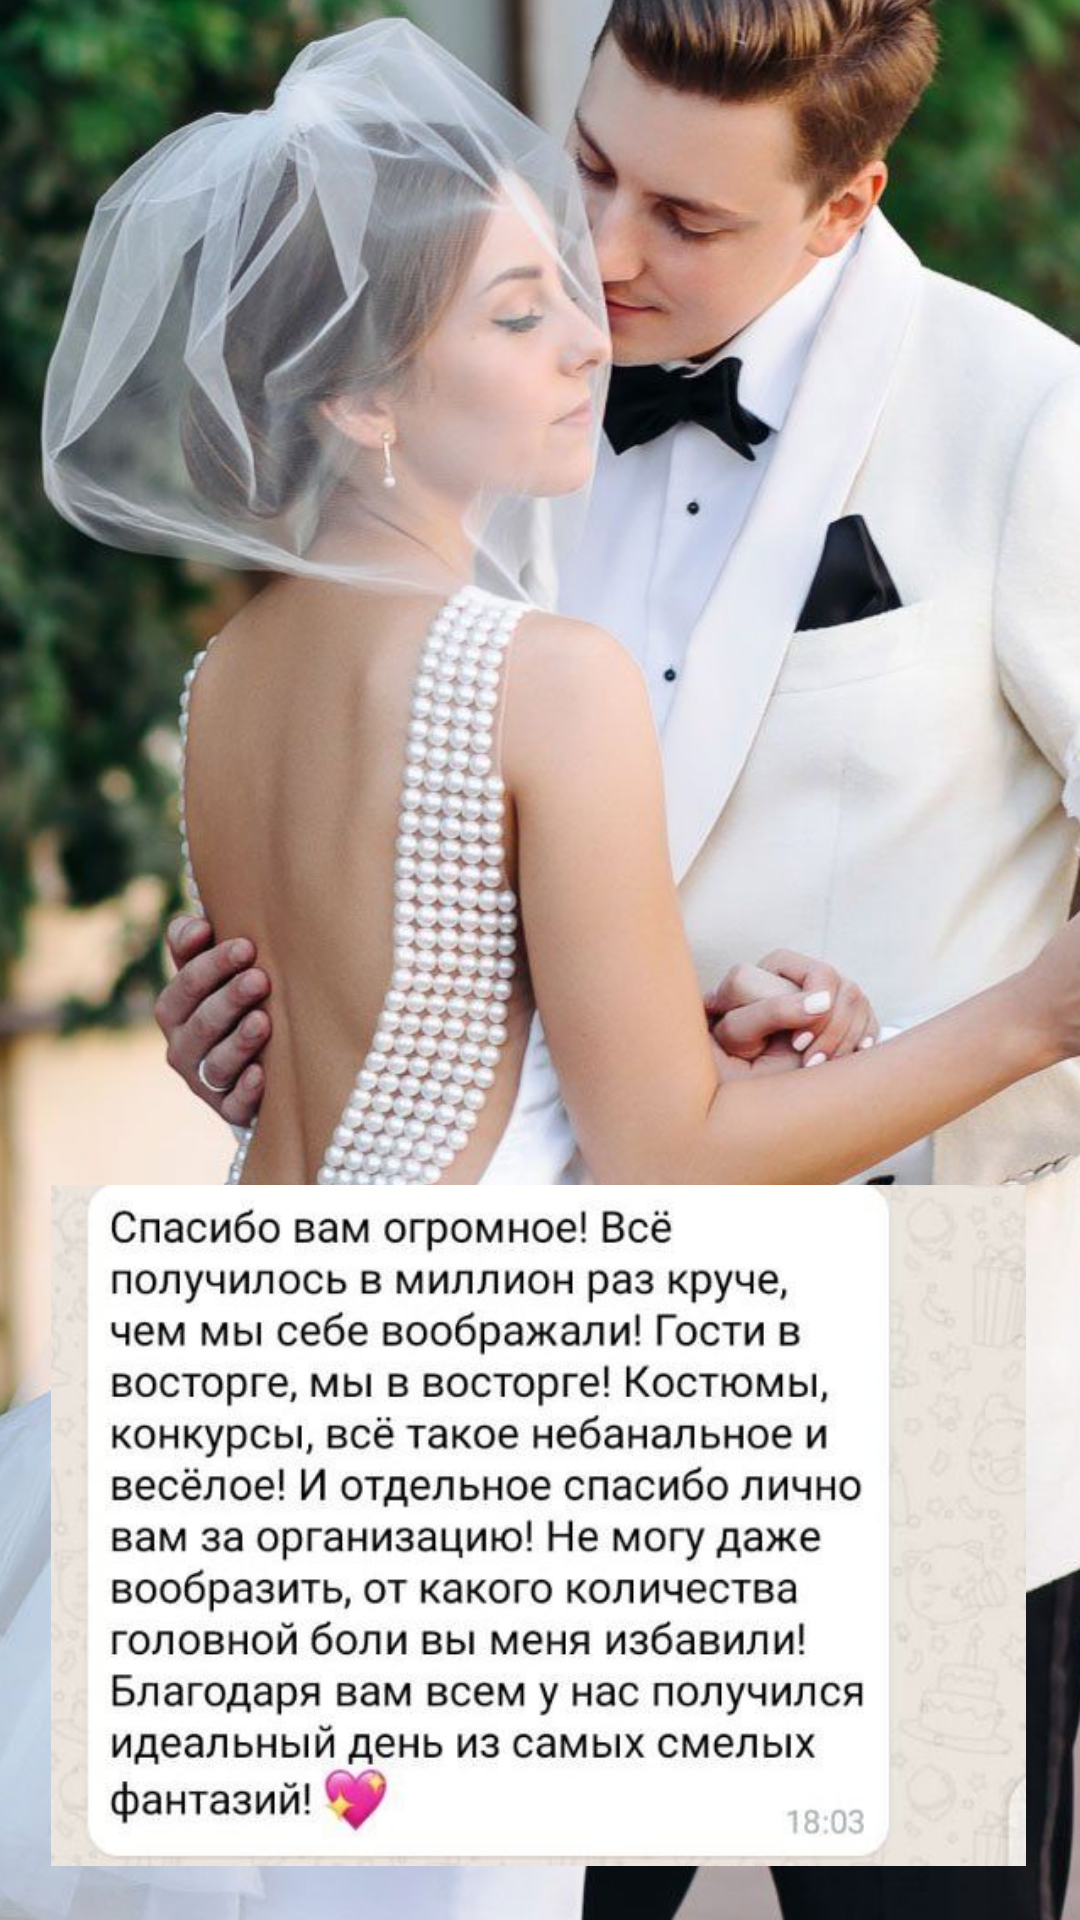 Организация свадьбы в Томске
от компании Pandaevent